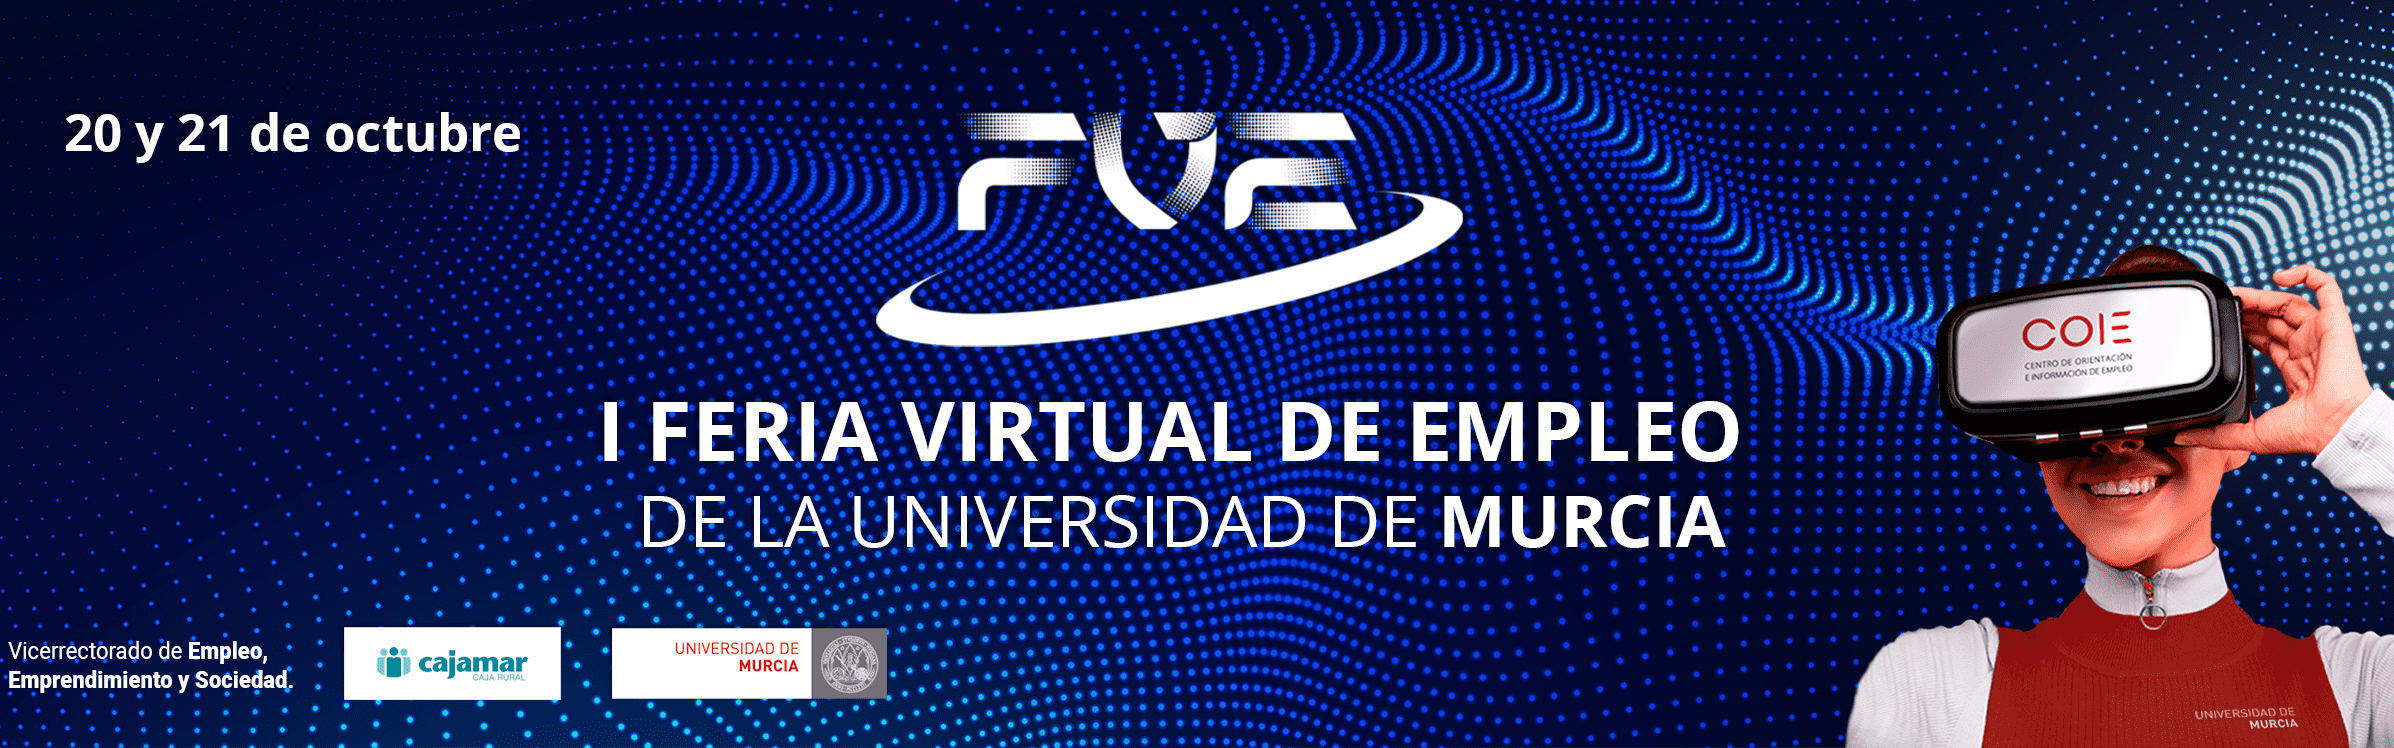 La Universidad de Murcia celebra los días 20 y 21 de octubre su I Feria Virtual de Empleo